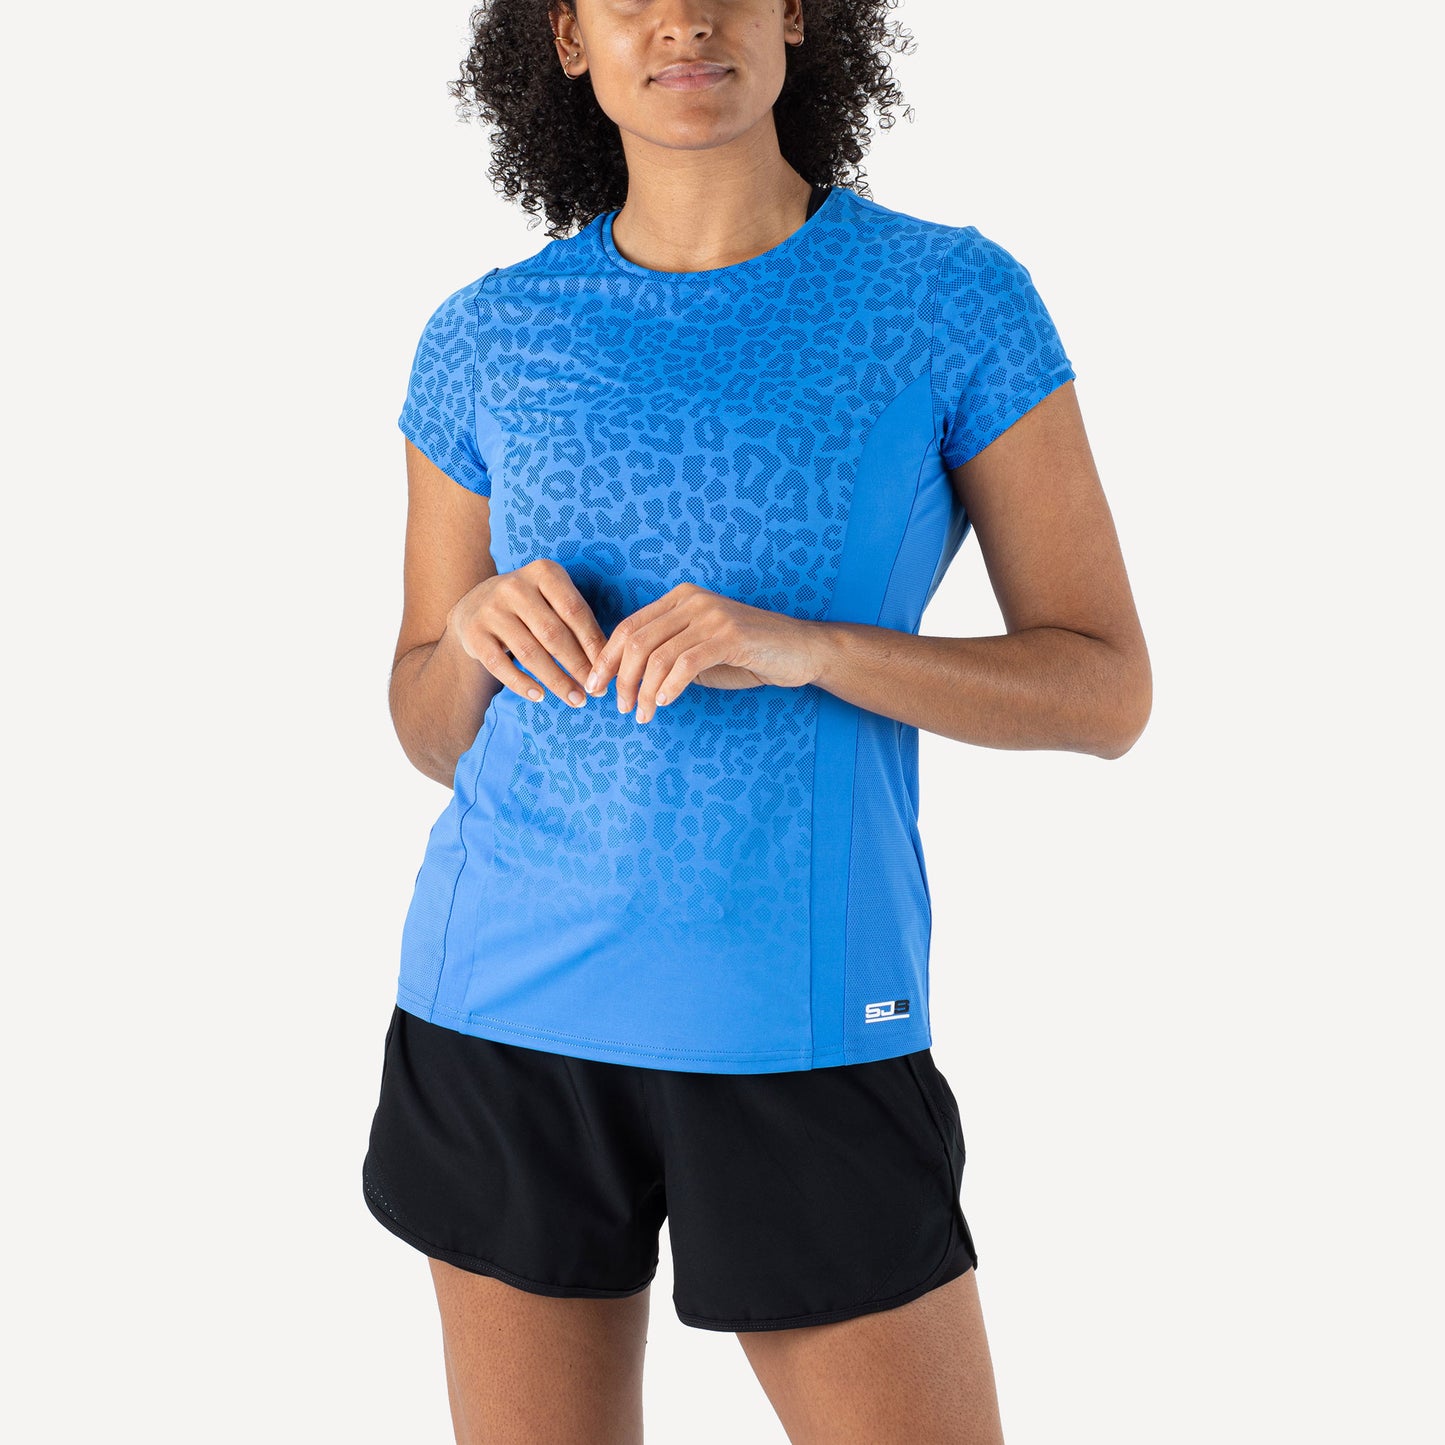 Sjeng Sports Bliz Women's Tennis Shirt Blue (1)